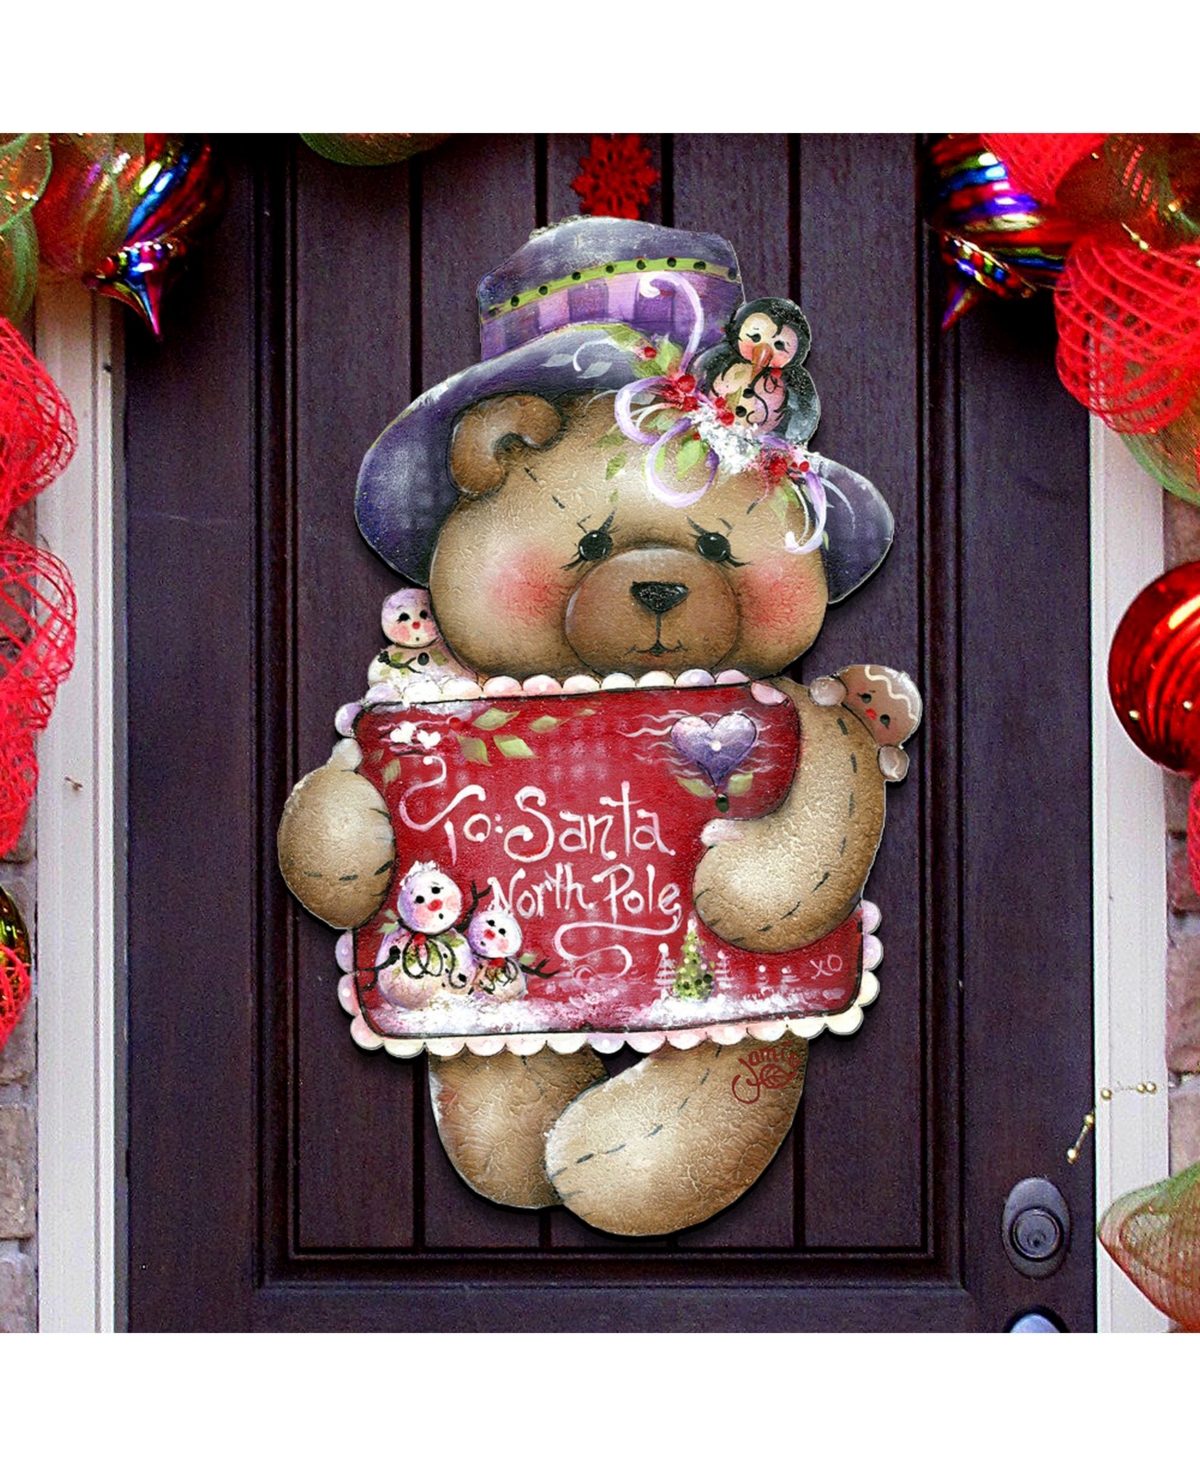 Jamie Mills Price Christmas to Santa With Love Wooden Decorative Door Hanger - Multi